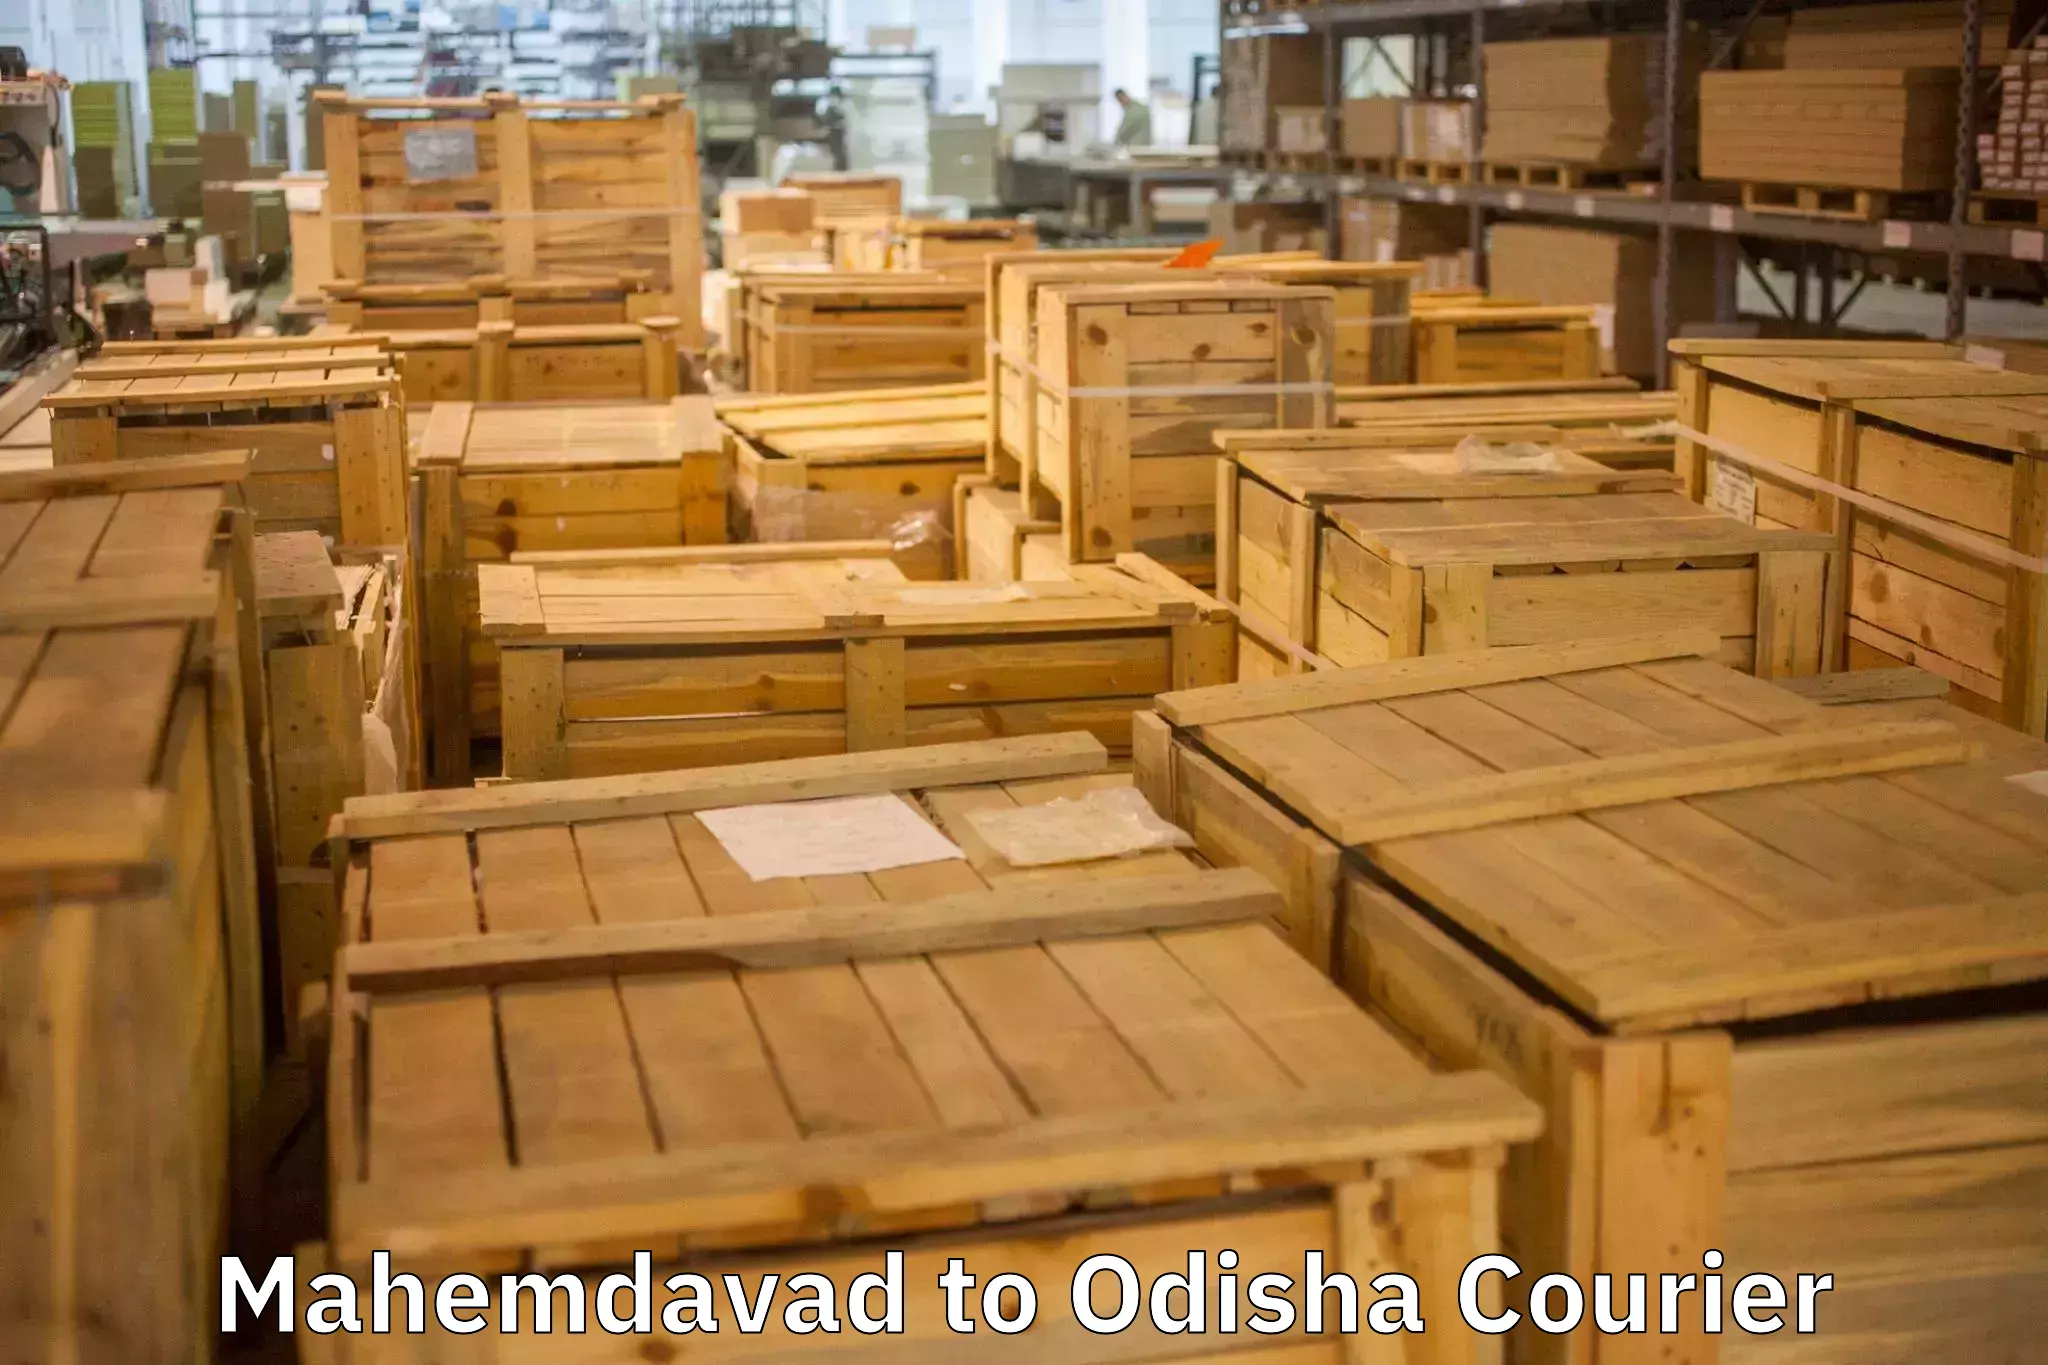 Furniture moving experts Mahemdavad to Berhampur Ganjam